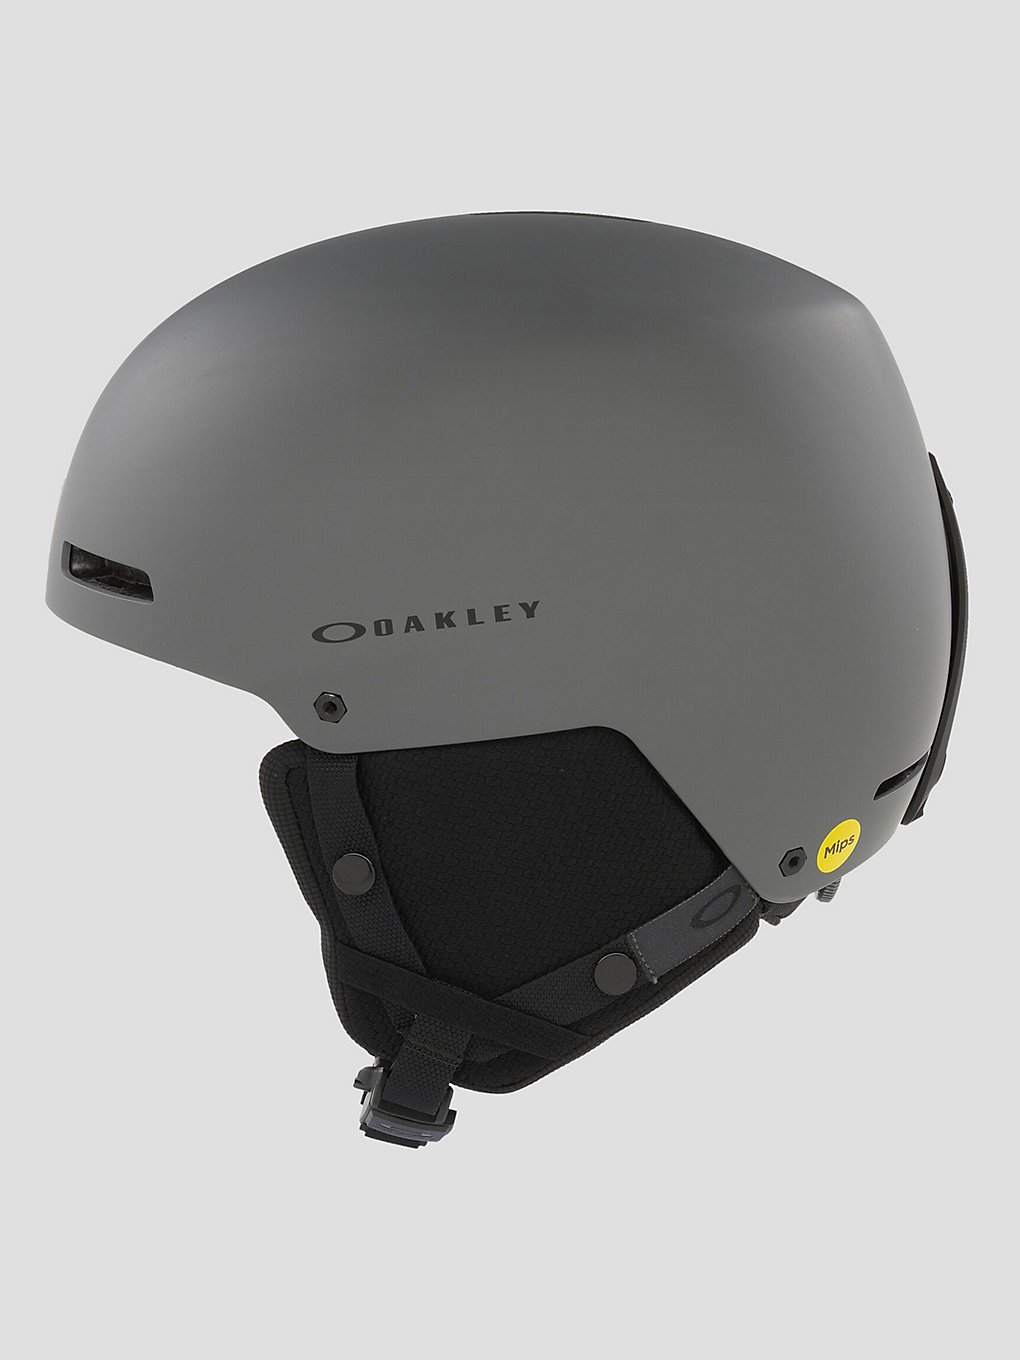 Oakley Mod1 Pro Helmet forged iron